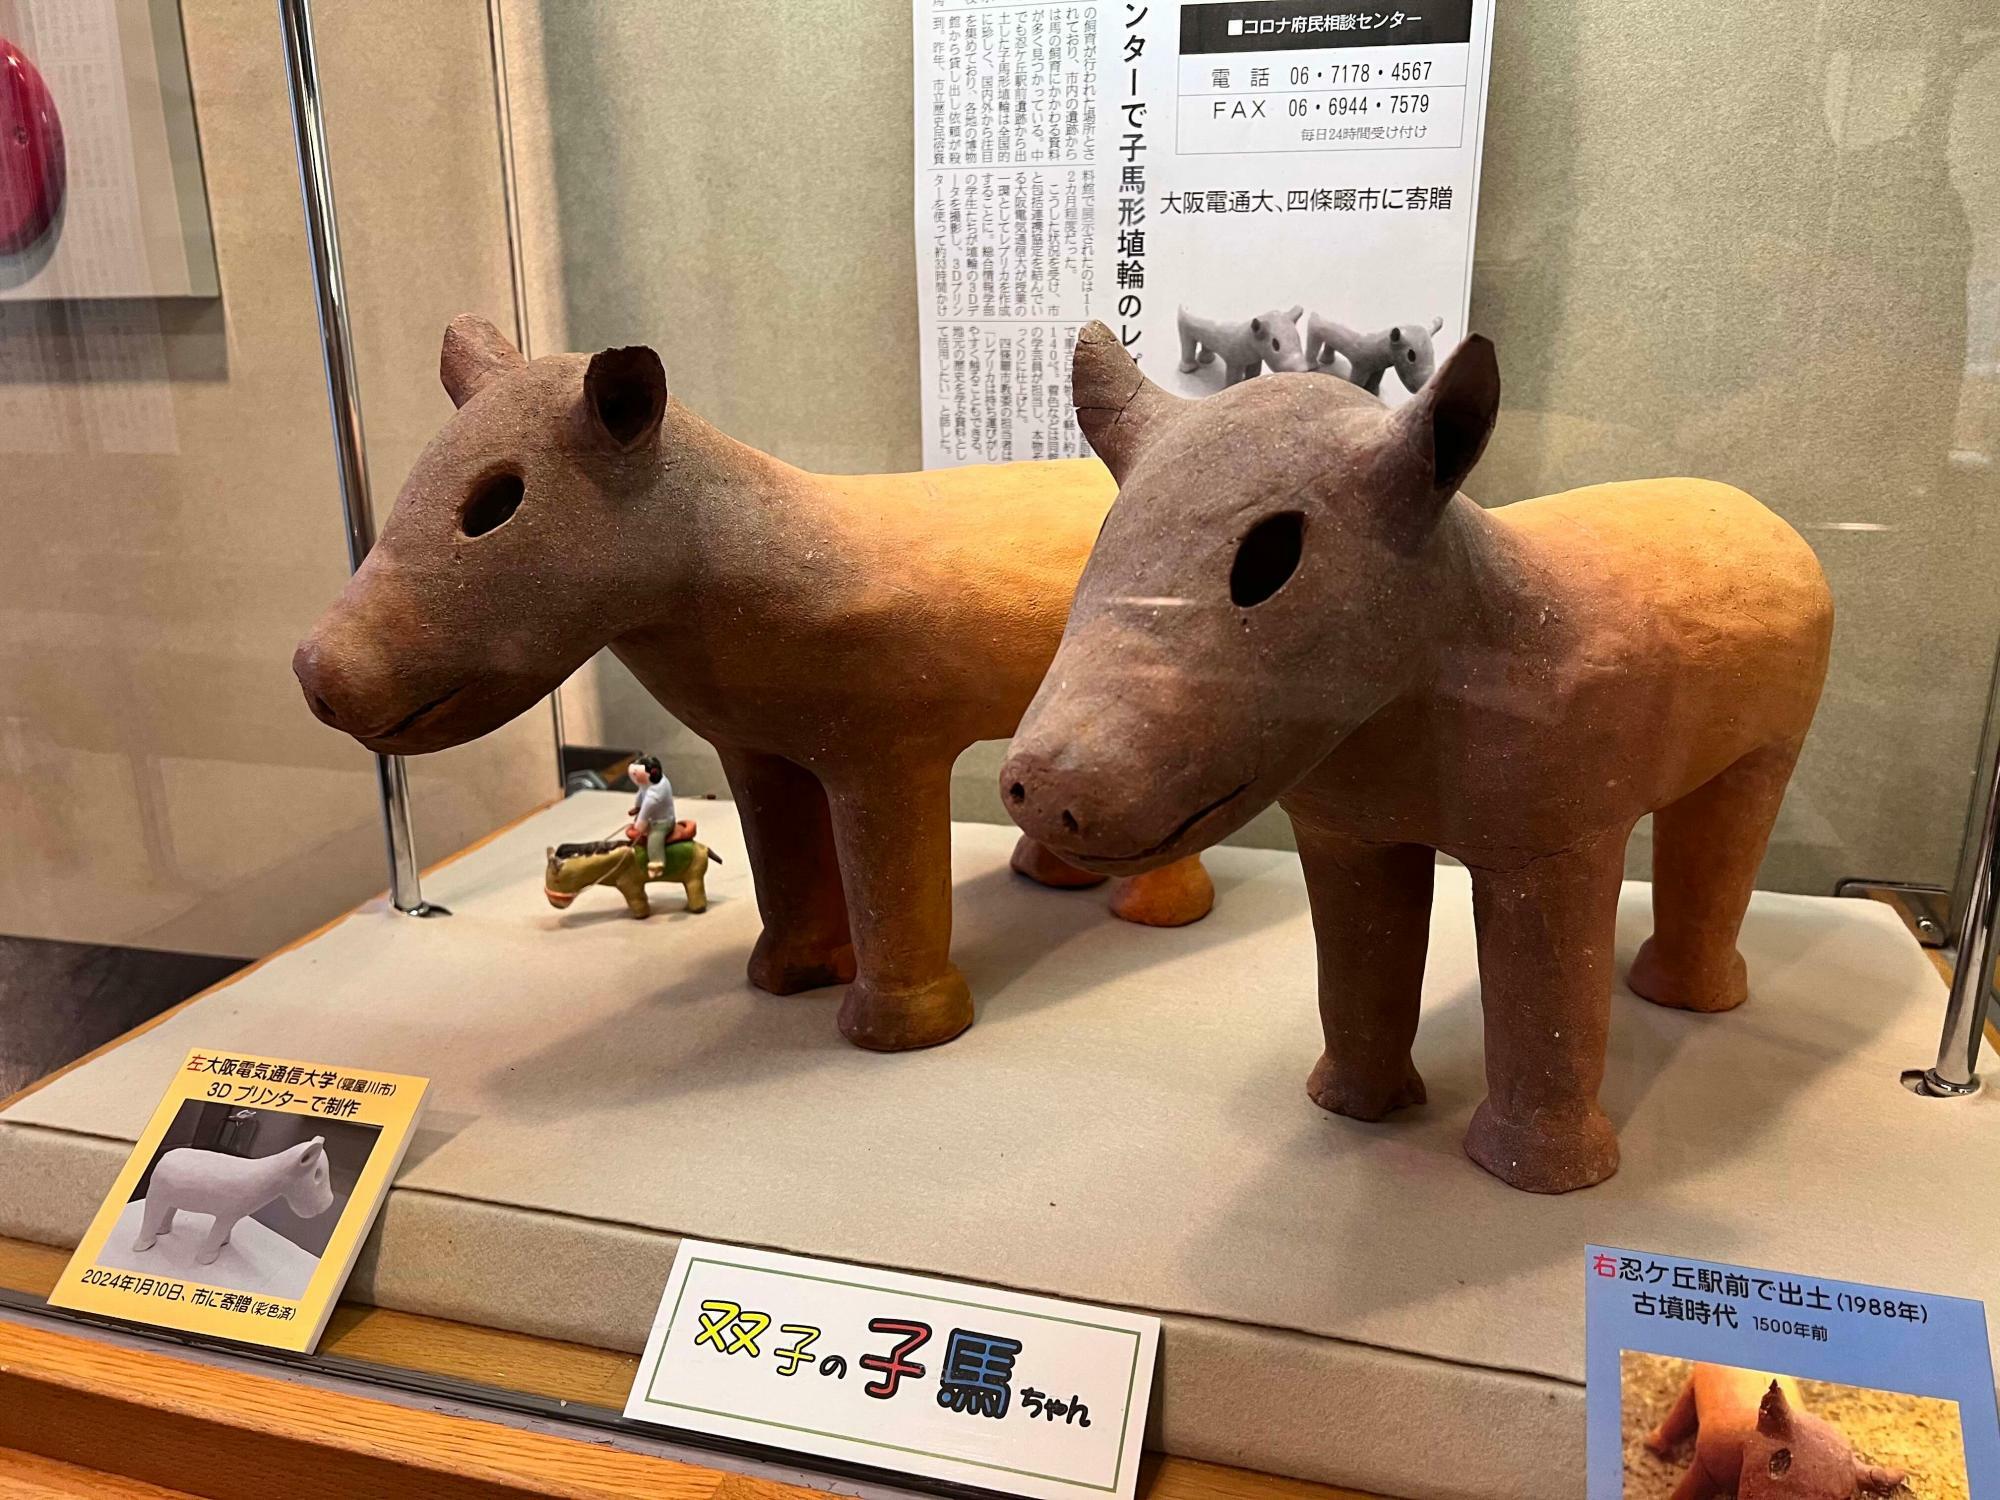 右が本物の子馬形埴輪、左が大阪電通大の学生が作ったレプリカ